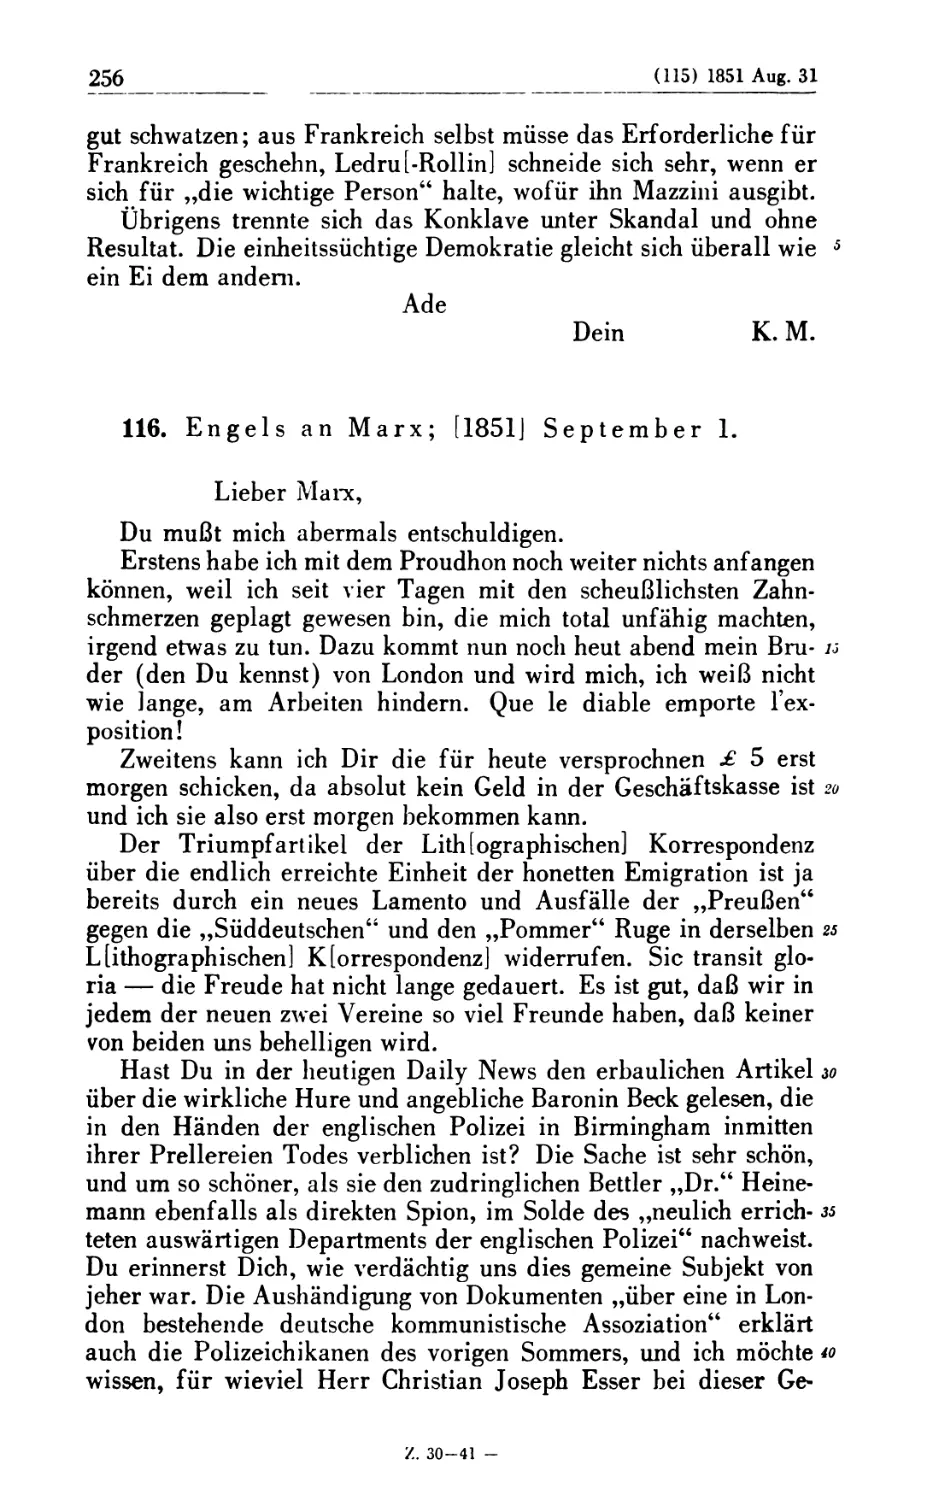 116. Engels an Marx; [1851] September 1